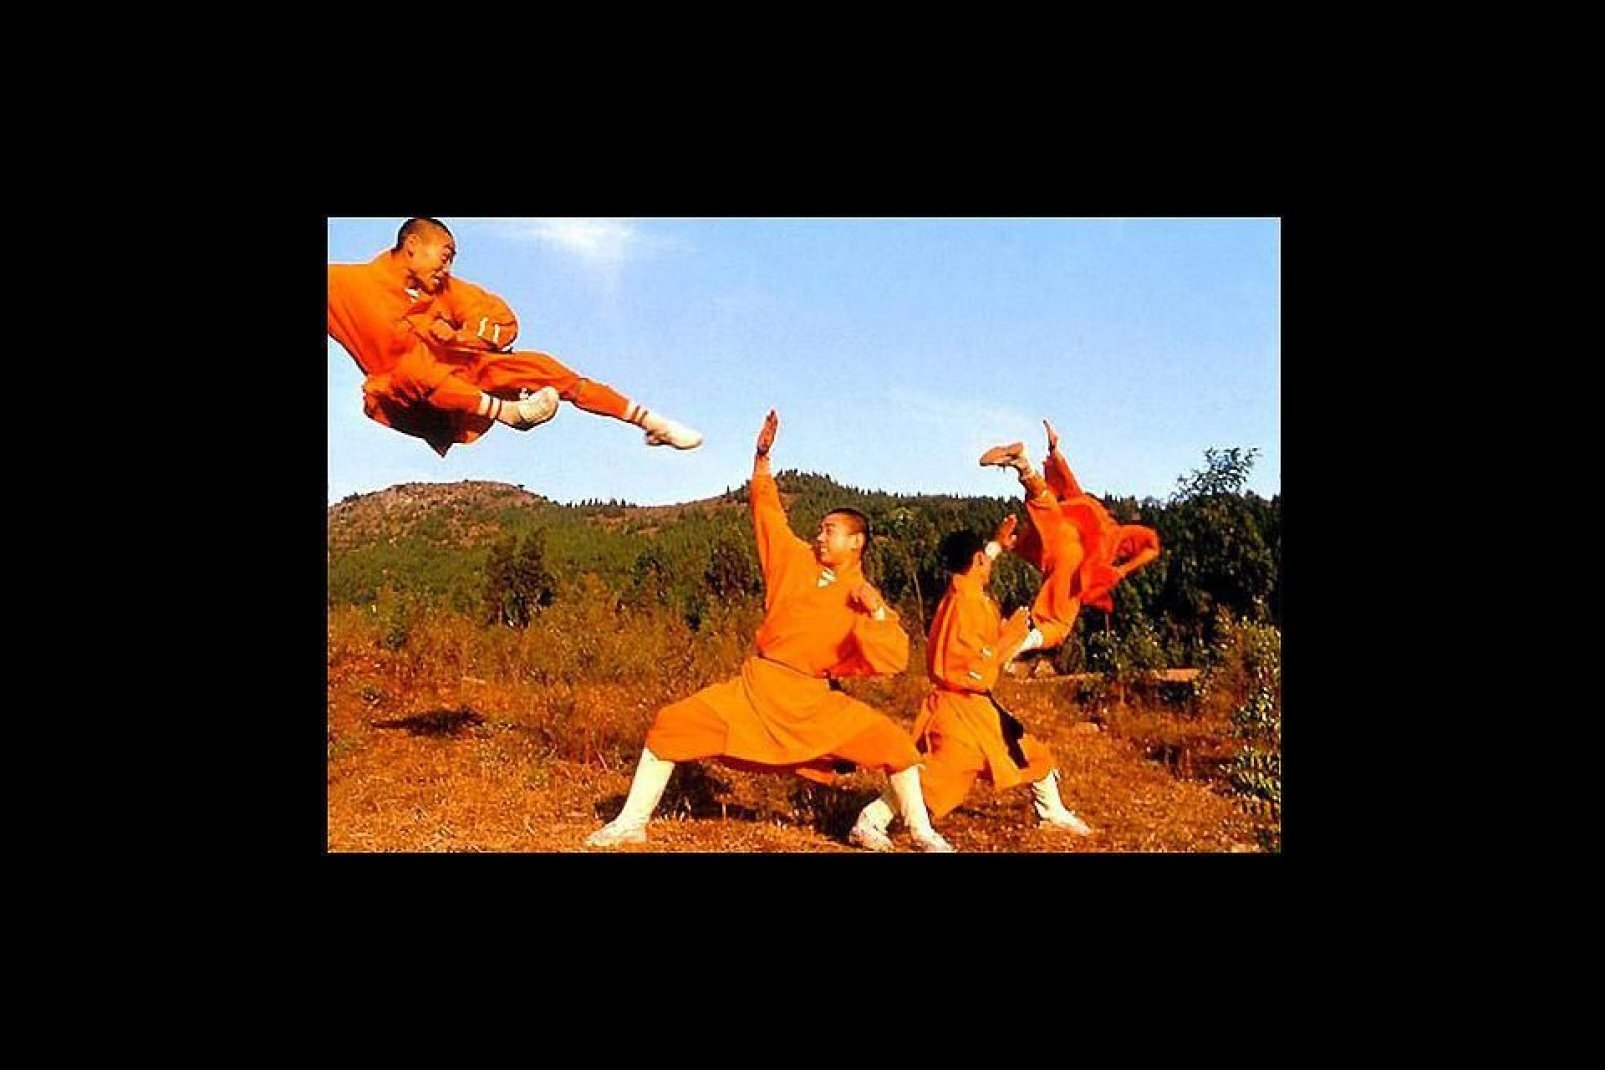 Da non perdere, la visita al monastero di Shaolin (80 km a sud-est), culla delle arti marziali cinesi e famoso in tutto il mondo.